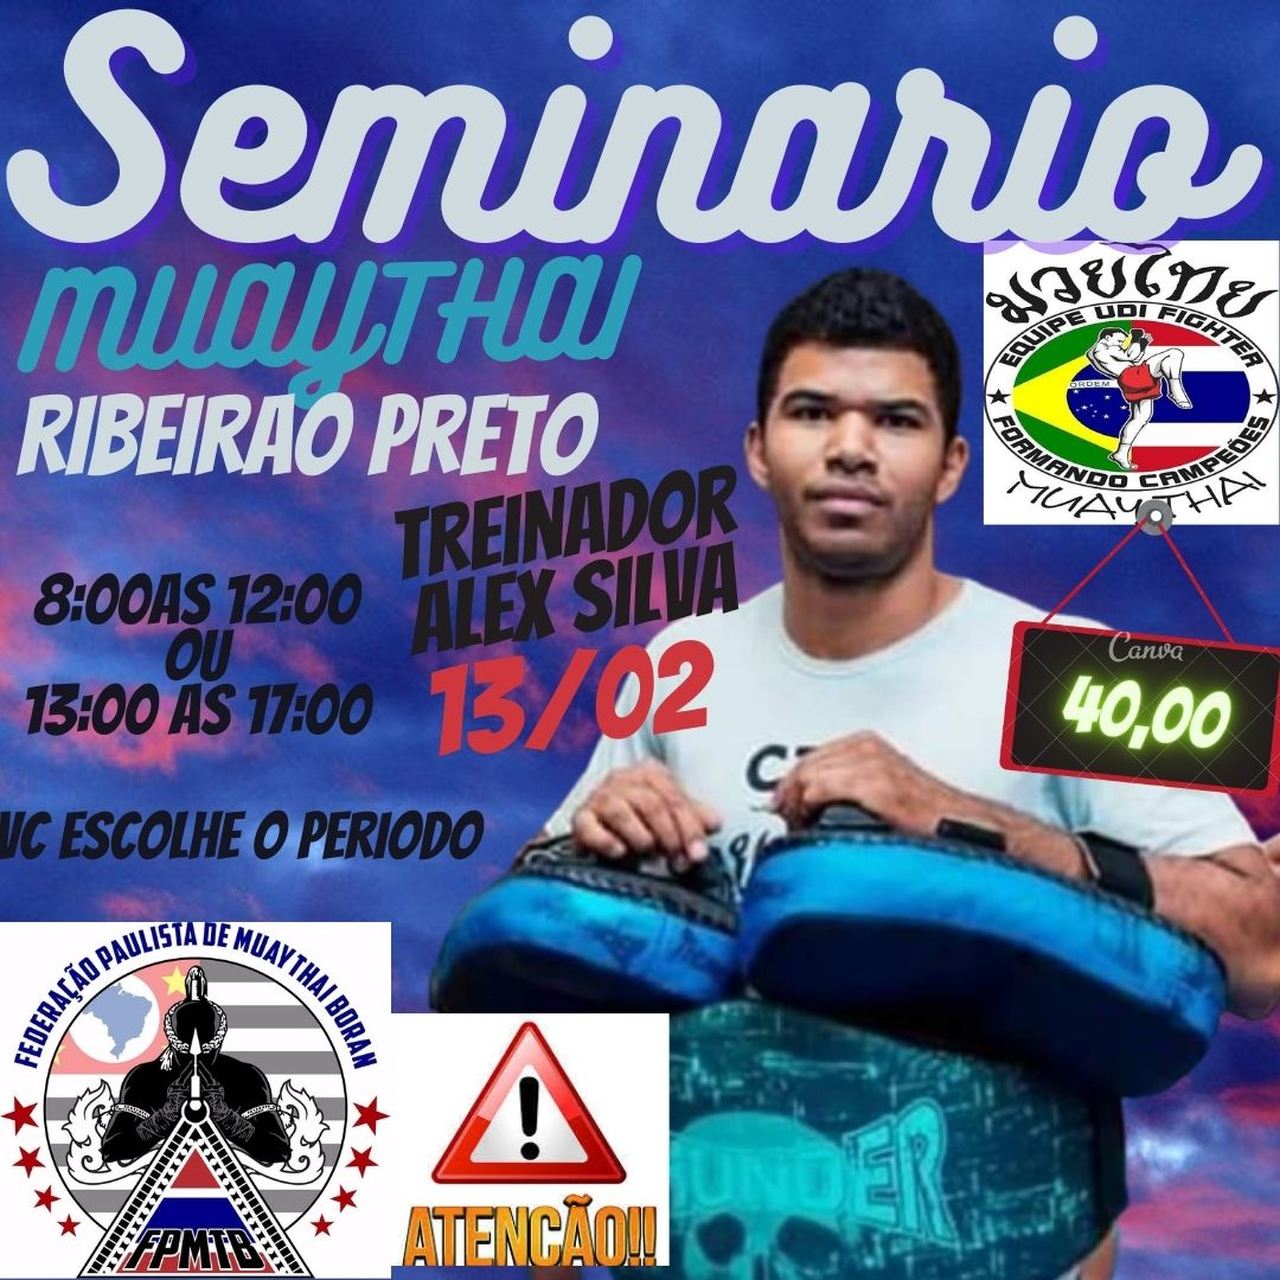 Você está visualizando atualmente Seminario , muaythai , treinador Alex Silva Ribeirao Preto-SP